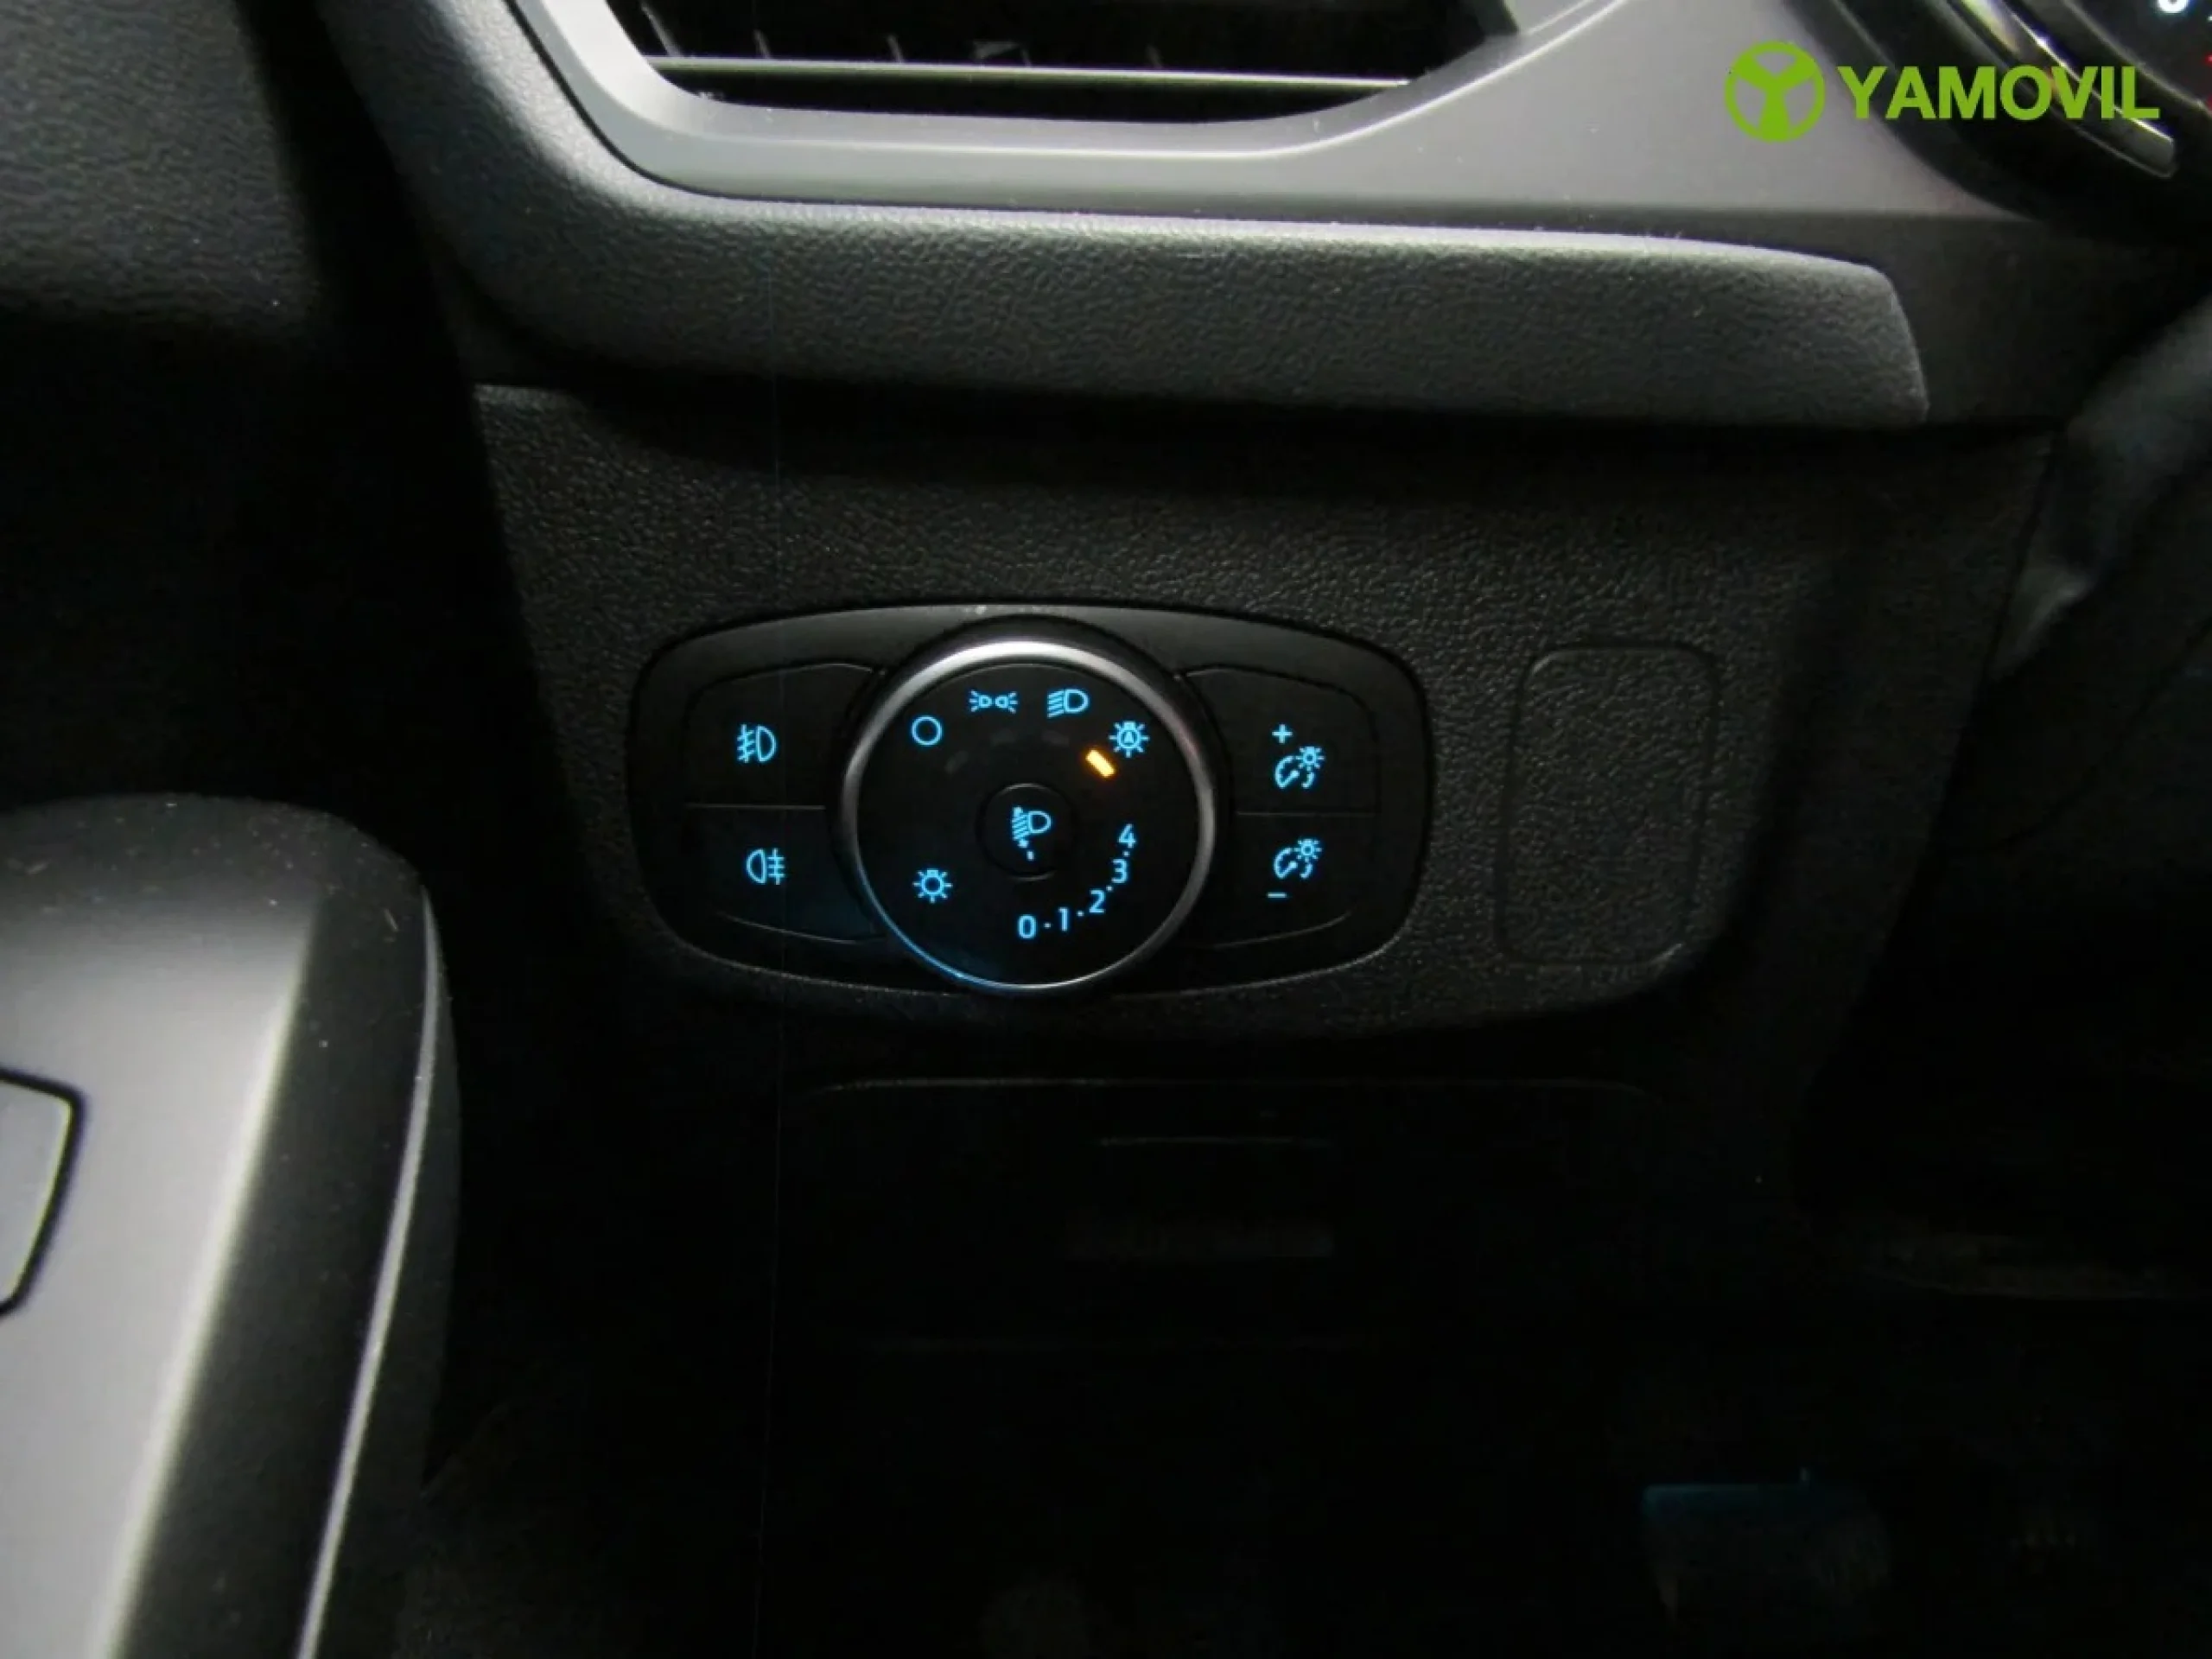 Ford Focus 1.0 Ecoboost Titanium Powershift 92 kW (125 CV) - Foto 22